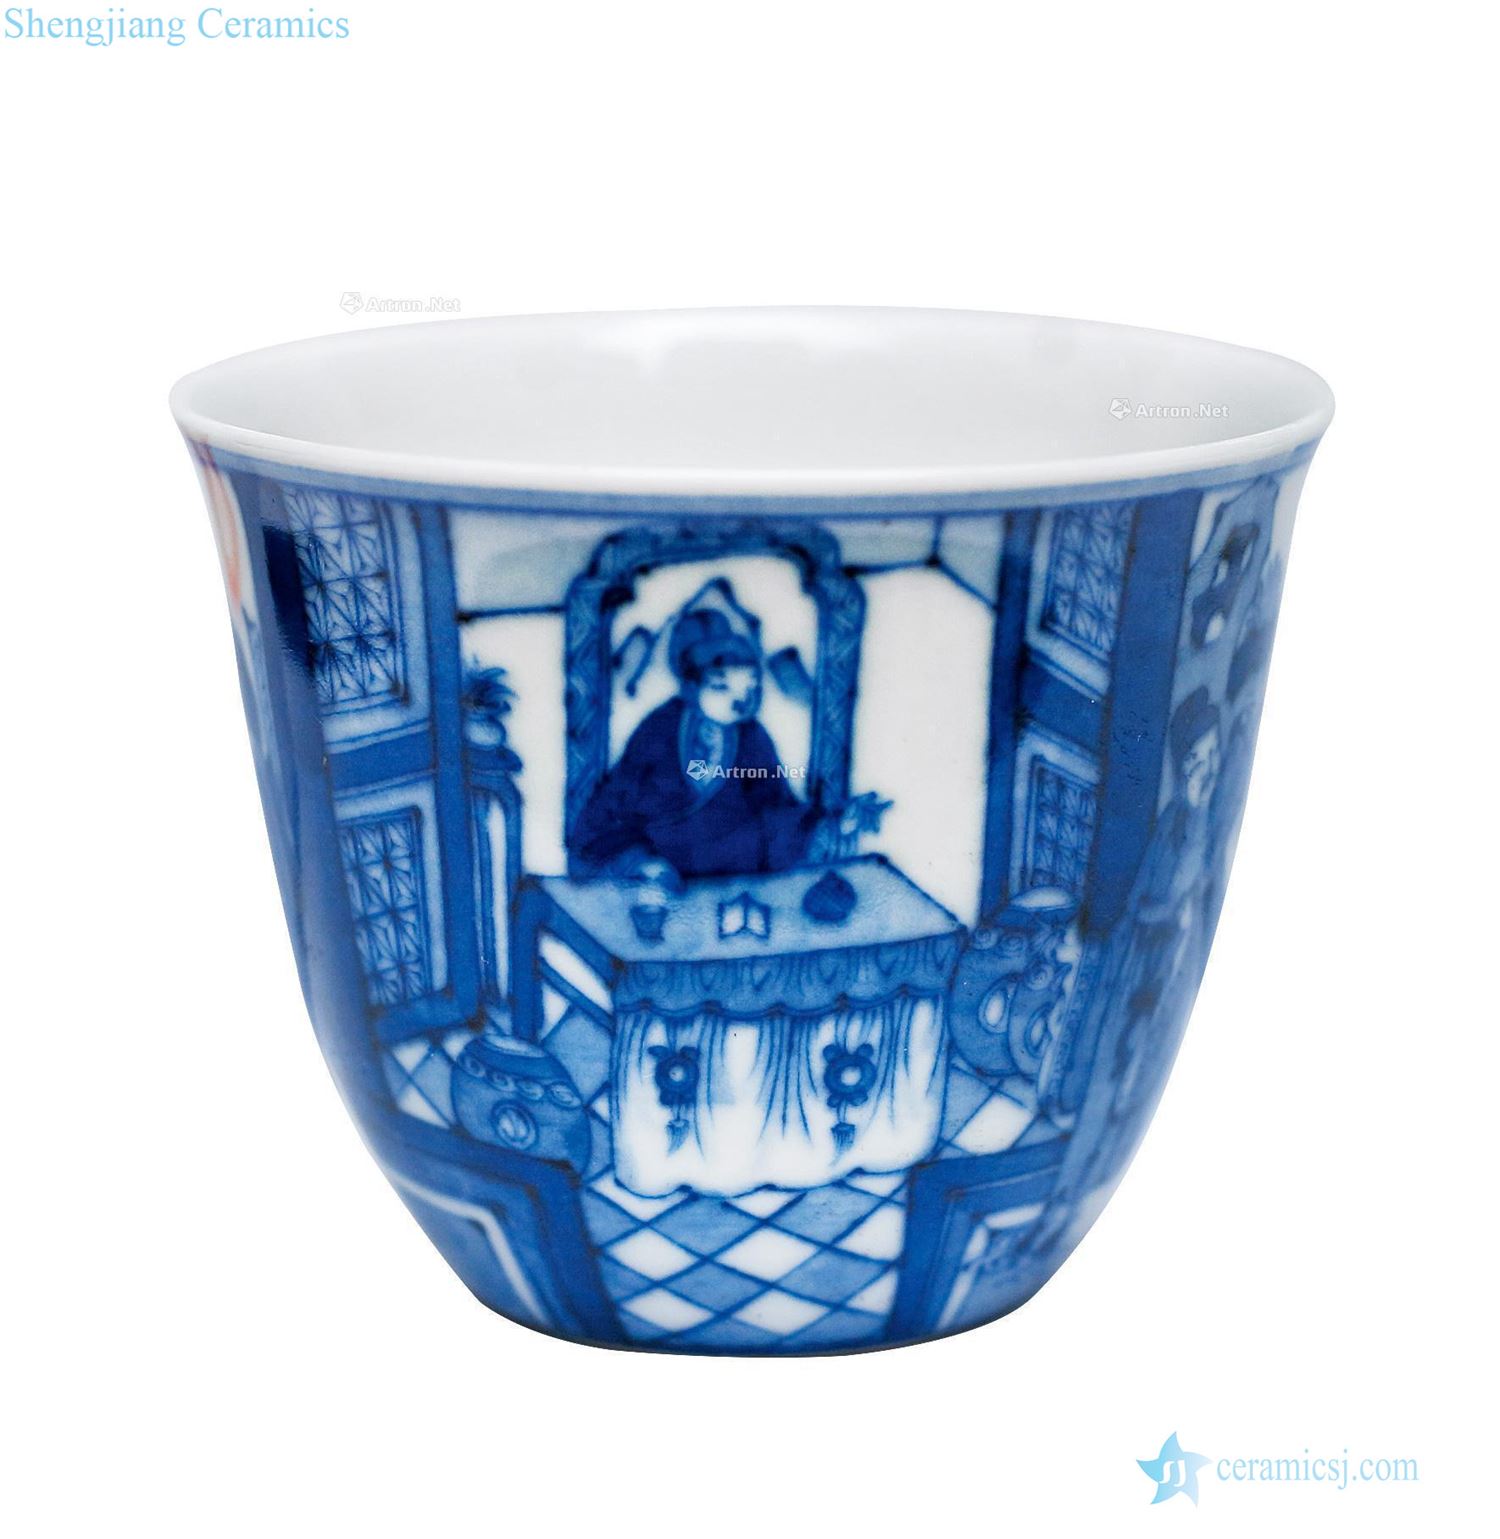 Kangxi porcelain cup